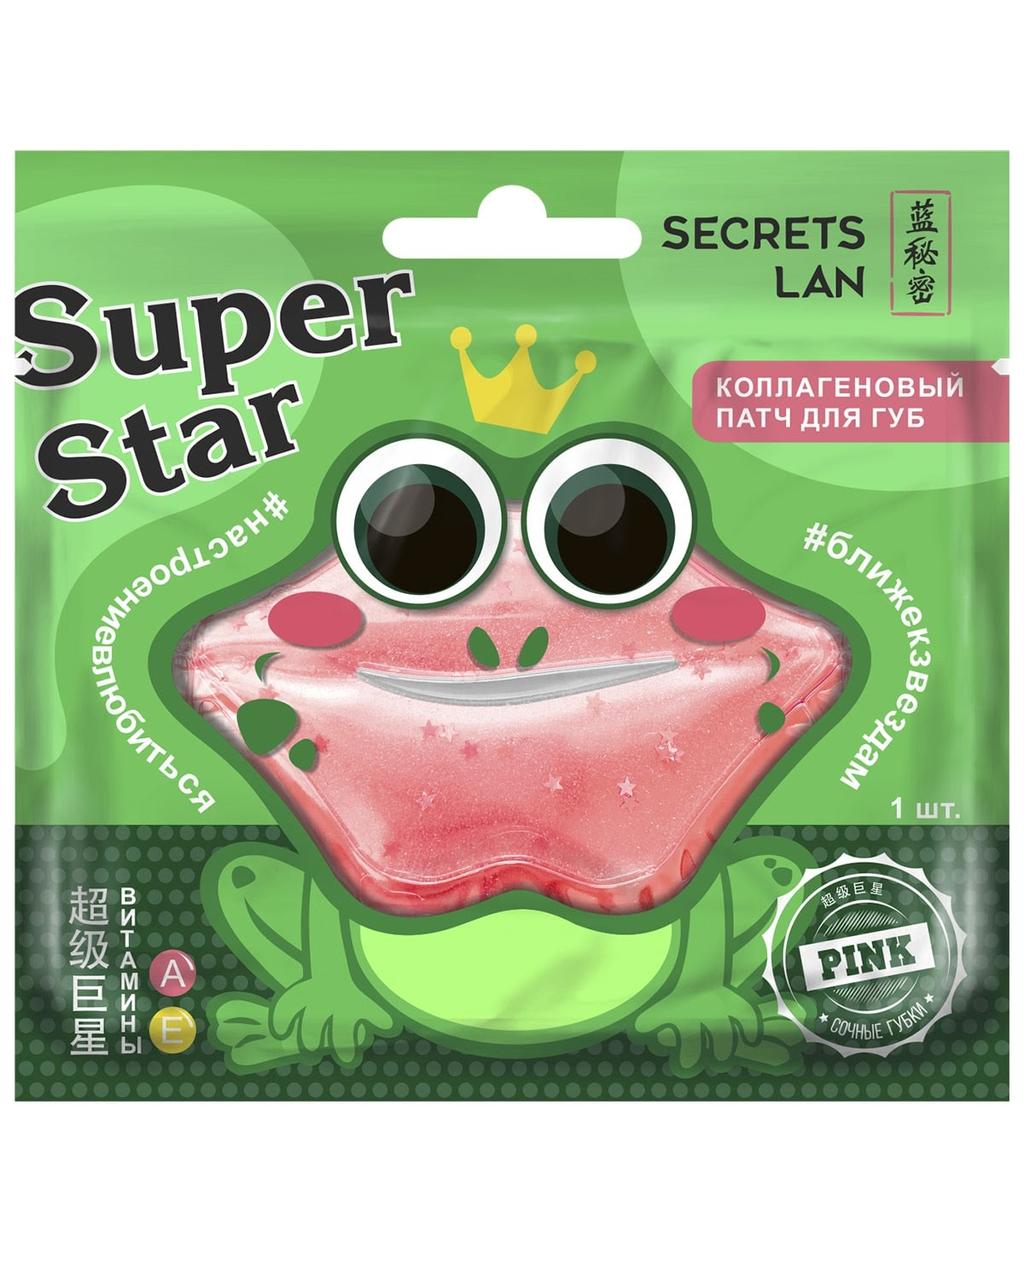 Коллагеновый патч для губ Secrets Lan c витаминами А, Е «Super Star» Pink, (8 г)